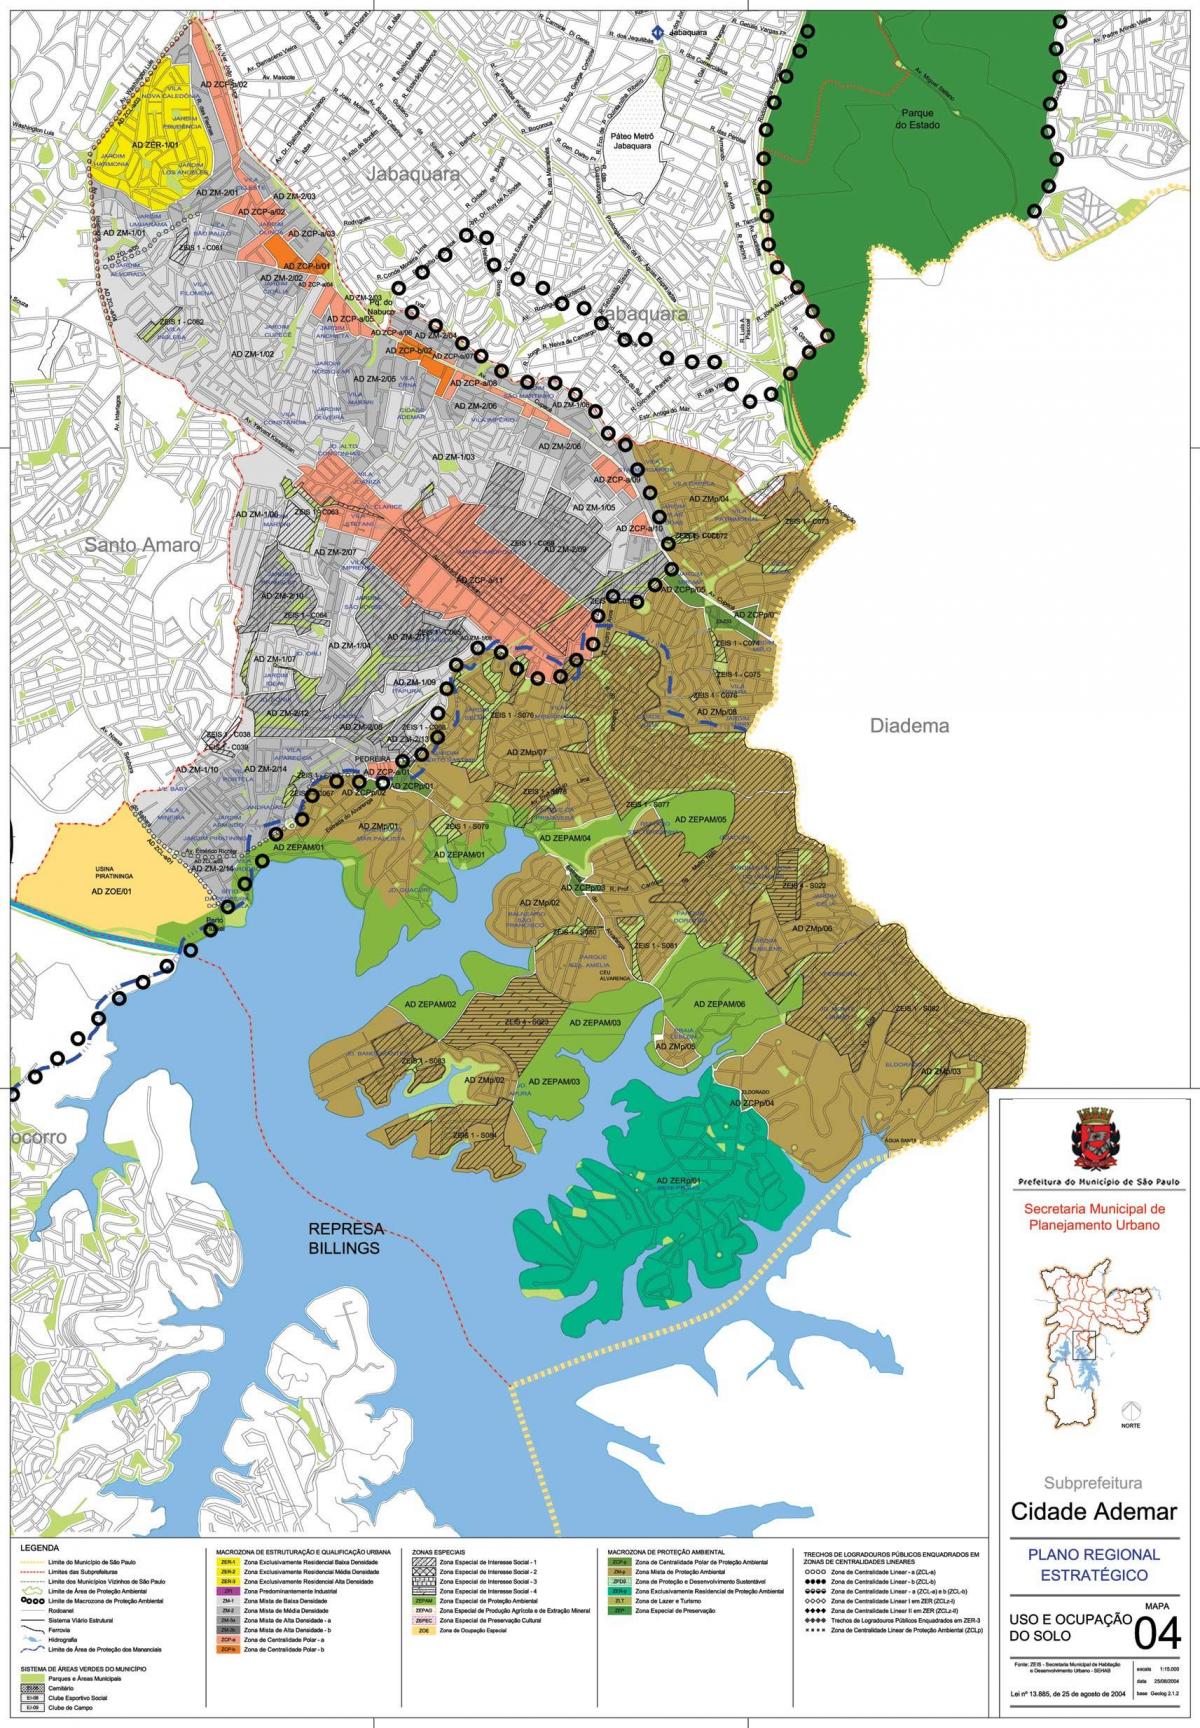 Mapa Cidade Ademar São Paulo - záber pôdy